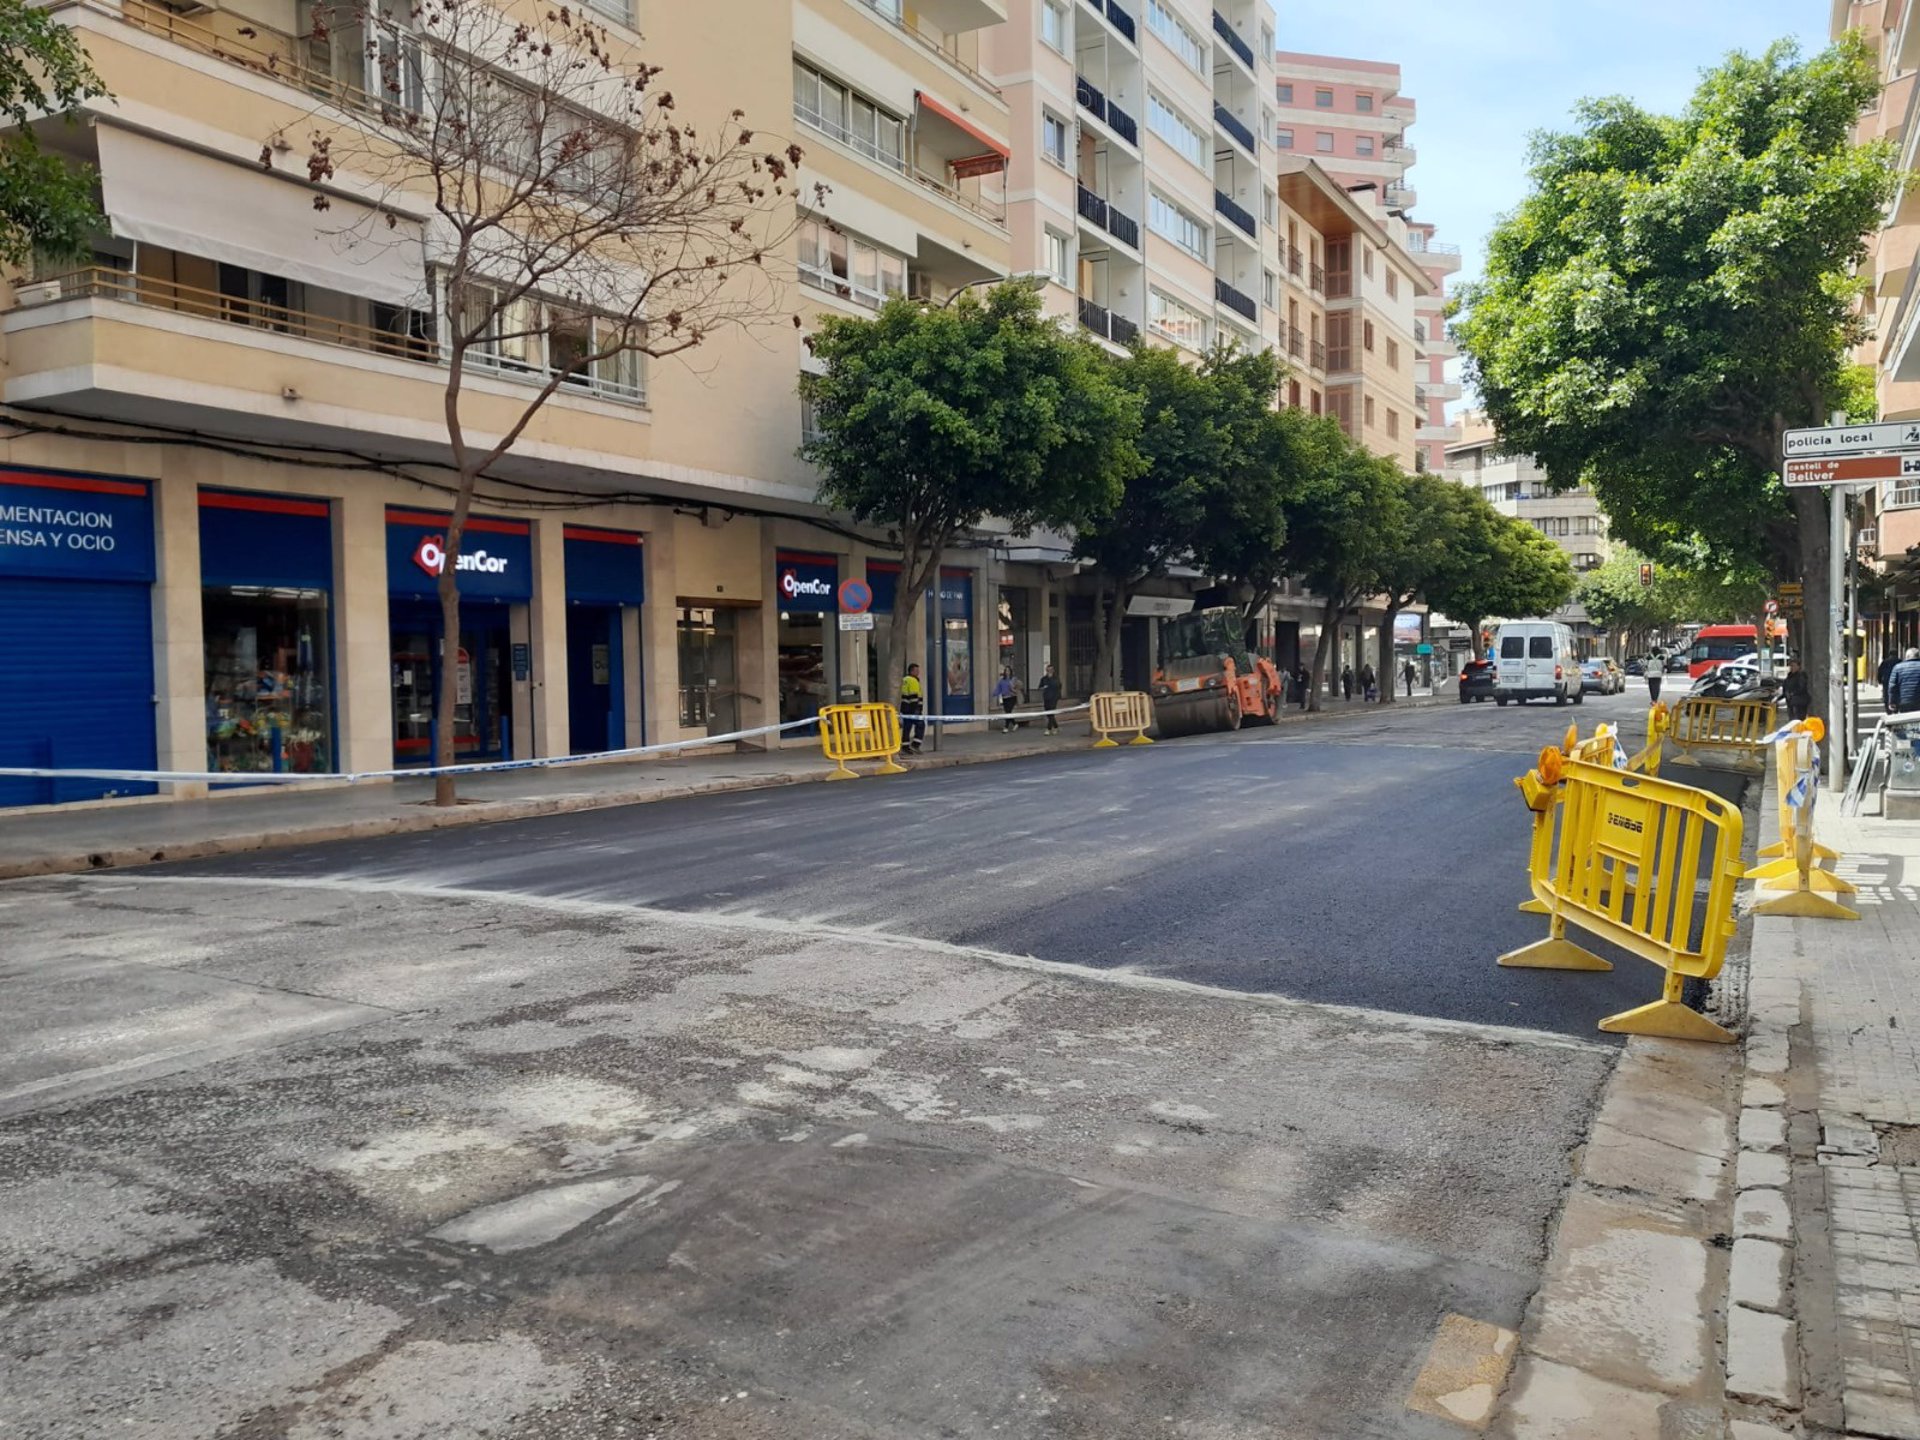 Reabren al tráfico la calle Ramón y Cajal de Palma - AYUNTAMIENTO DE PALMA